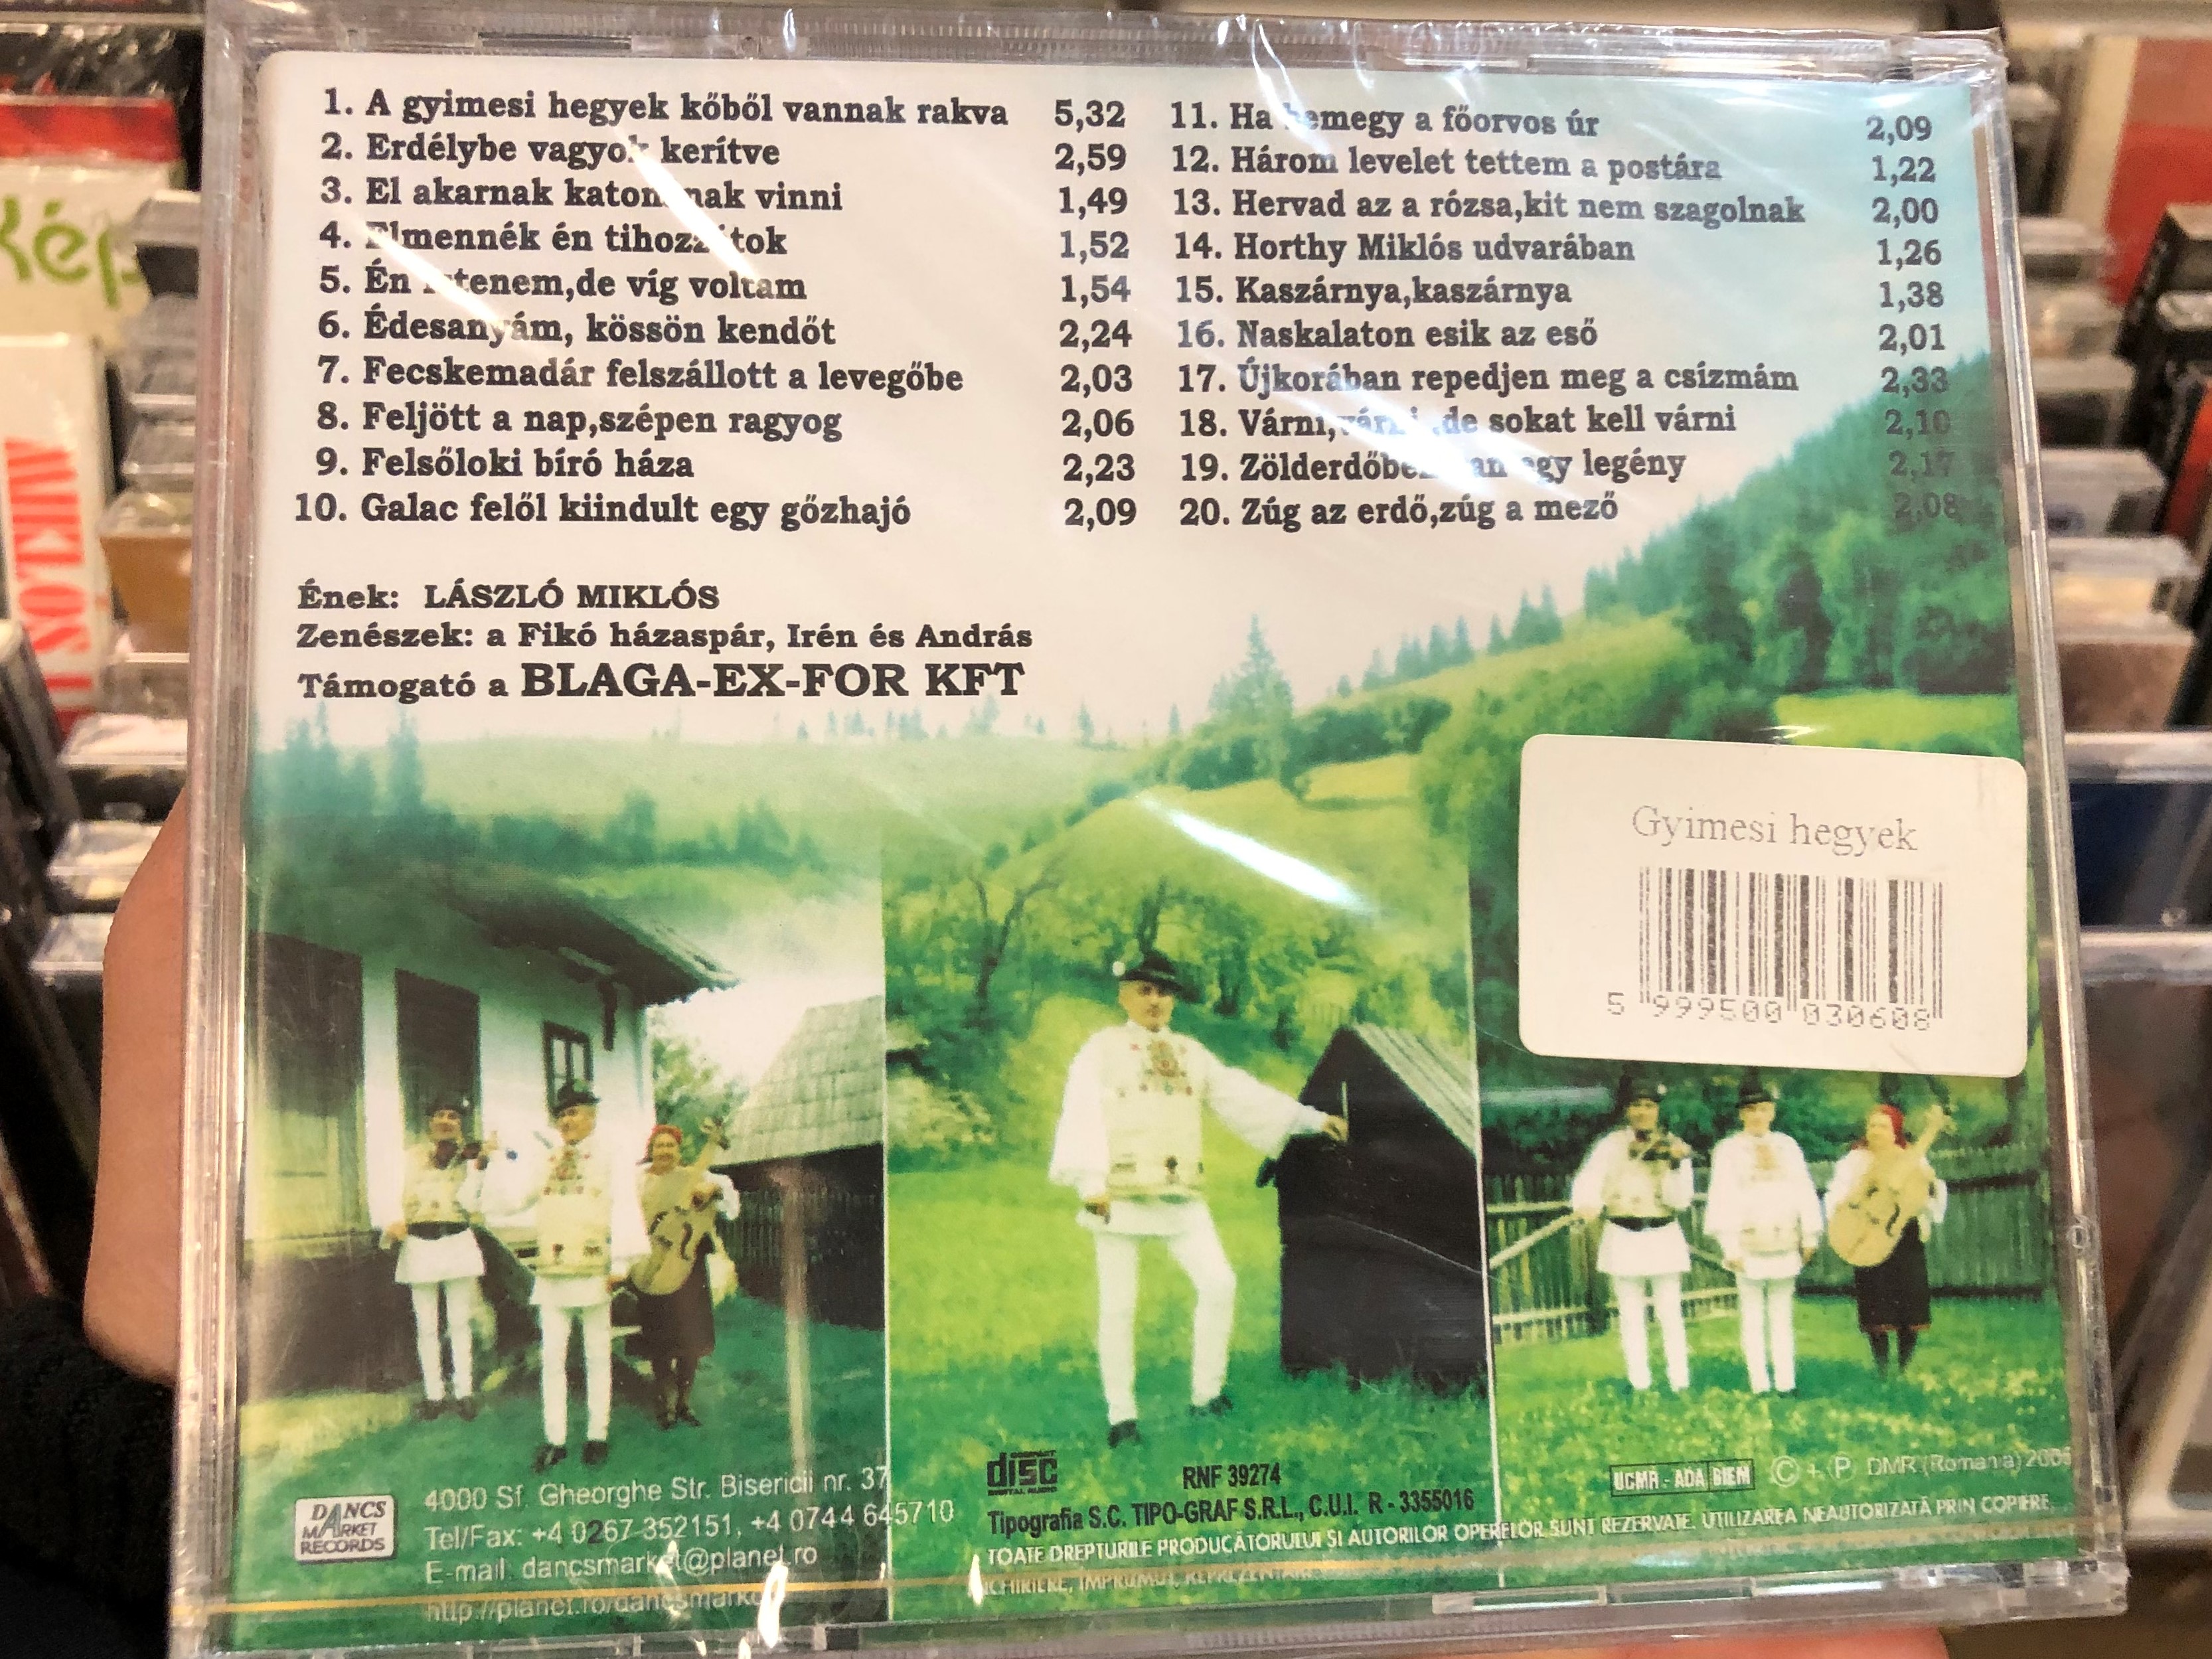 l-szl-mikl-s-a-gyimesi-hegyek-k-b-l-vannak-rakva-dancs-market-records-audio-cd-2005-dmr-079-2-.jpg